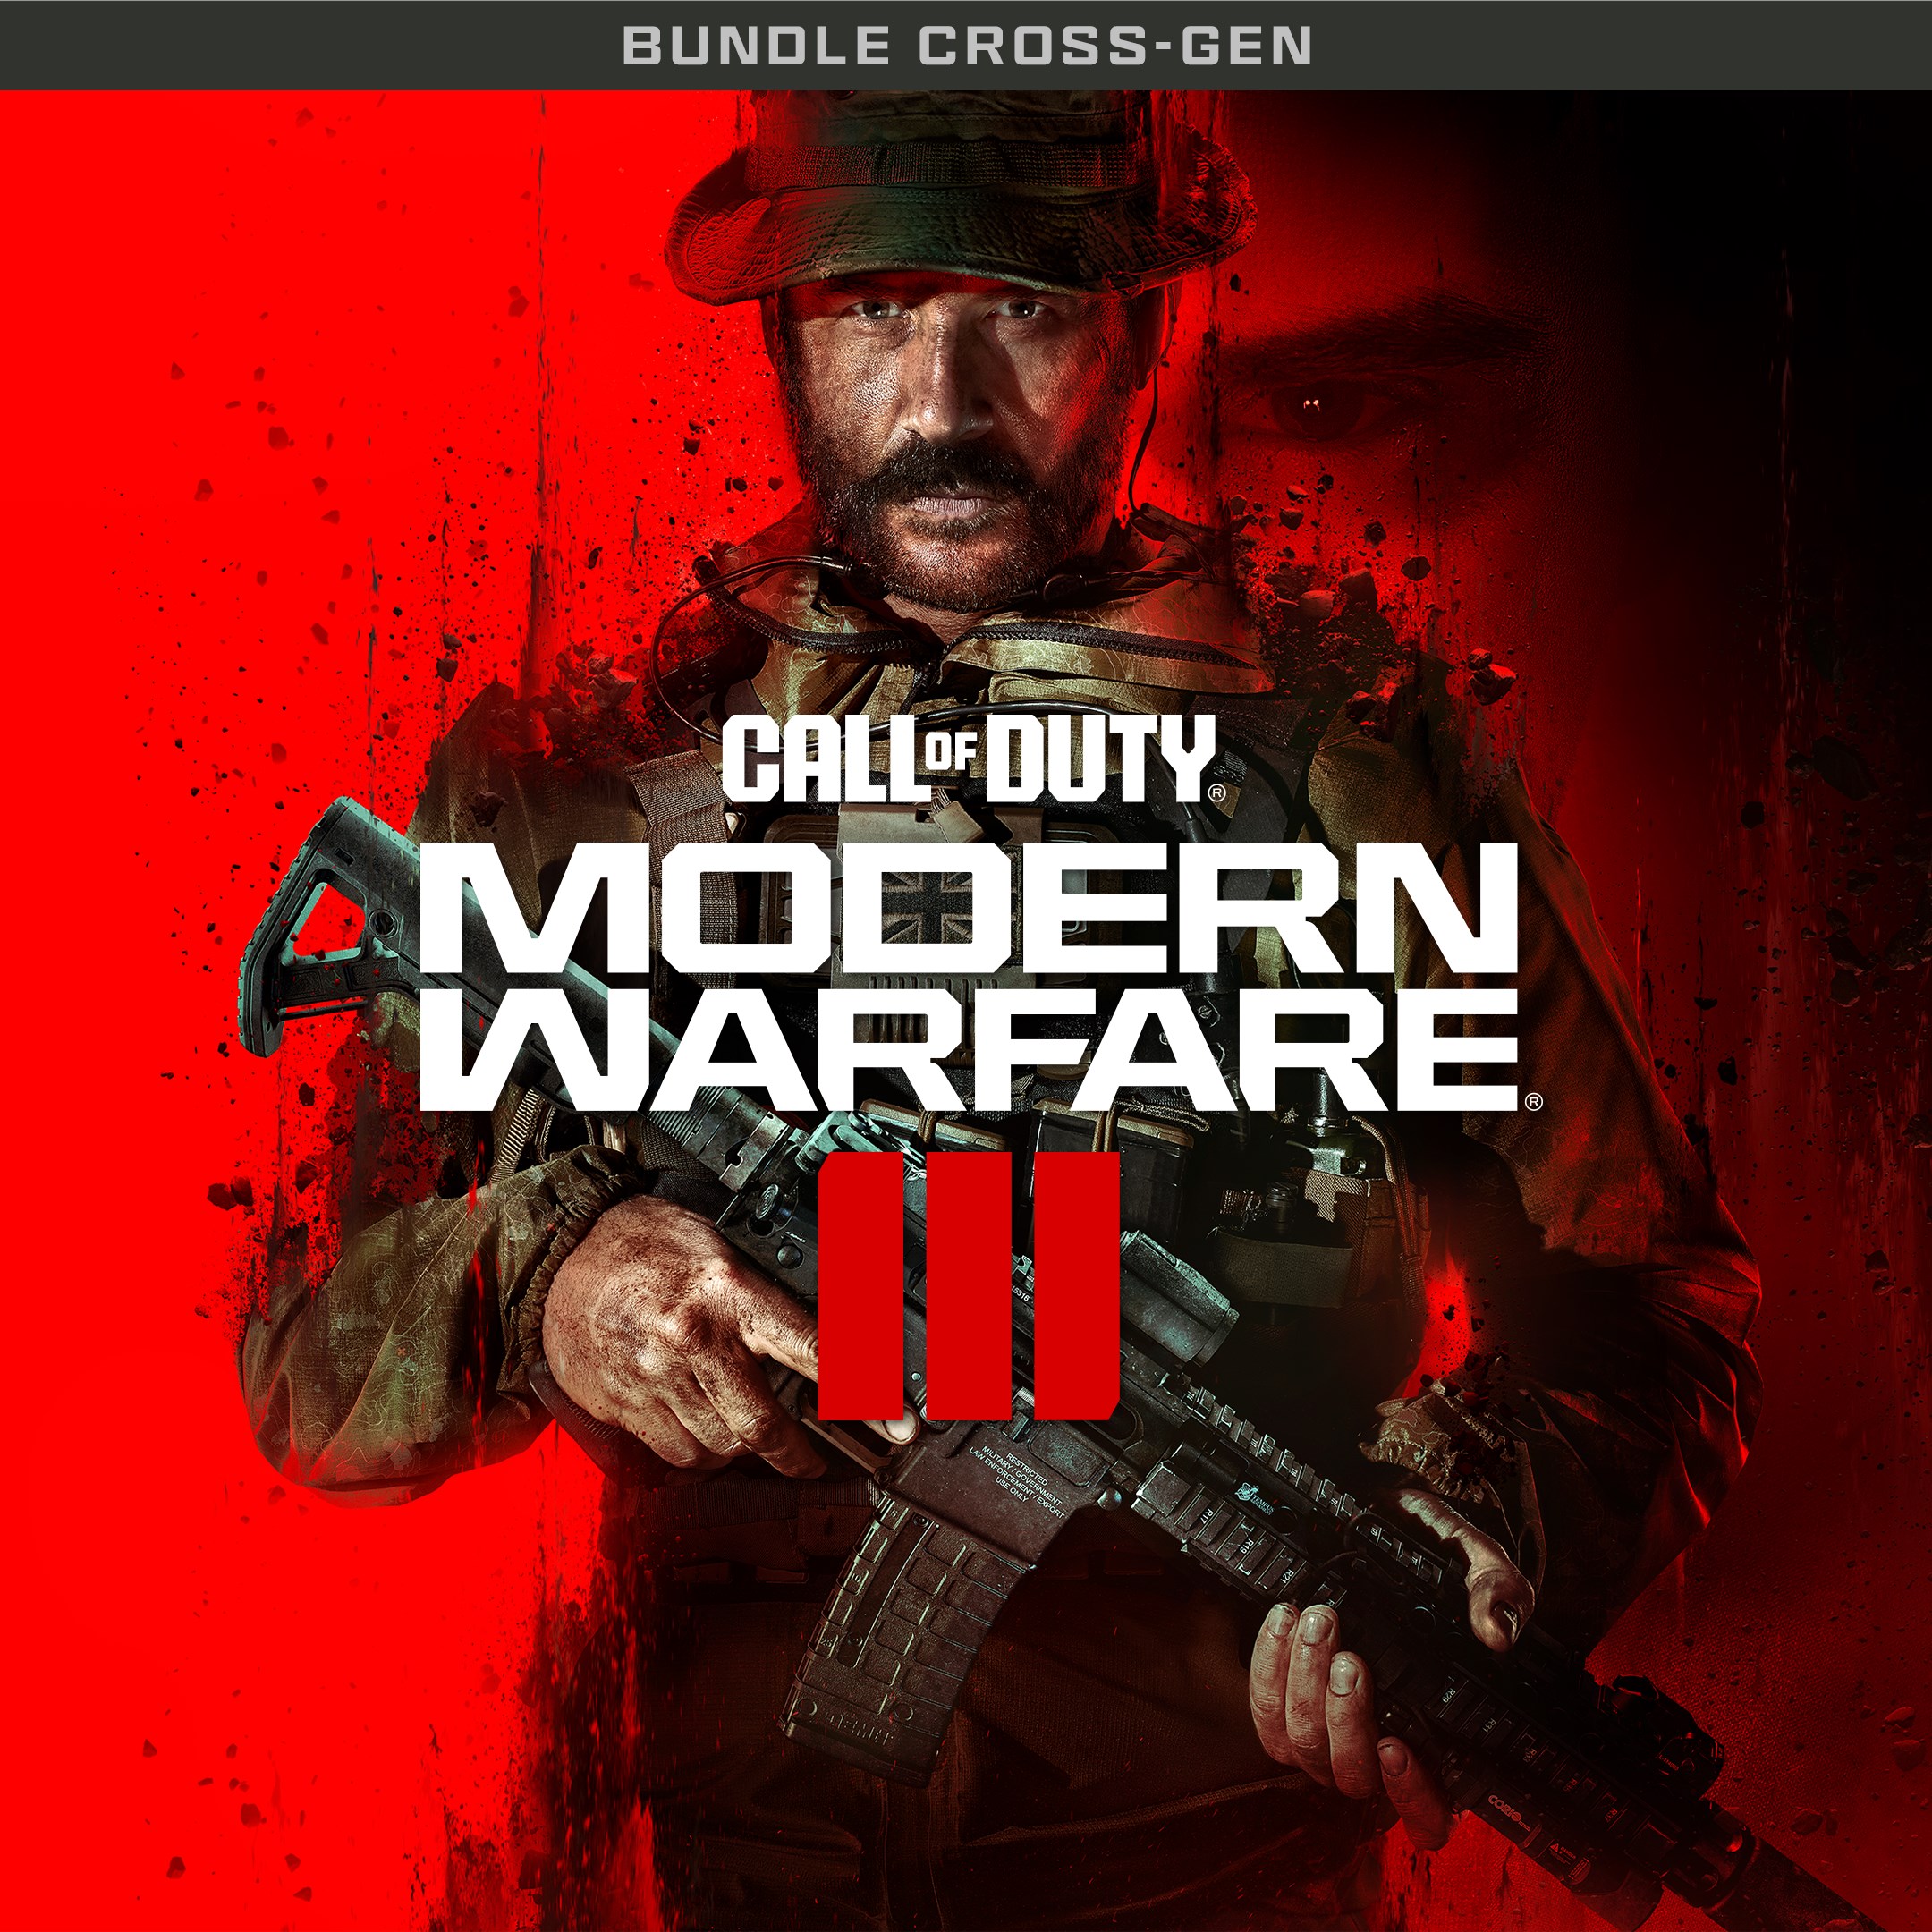 Call of Duty®: Modern Warfare® III - Bundle Cross-Gen